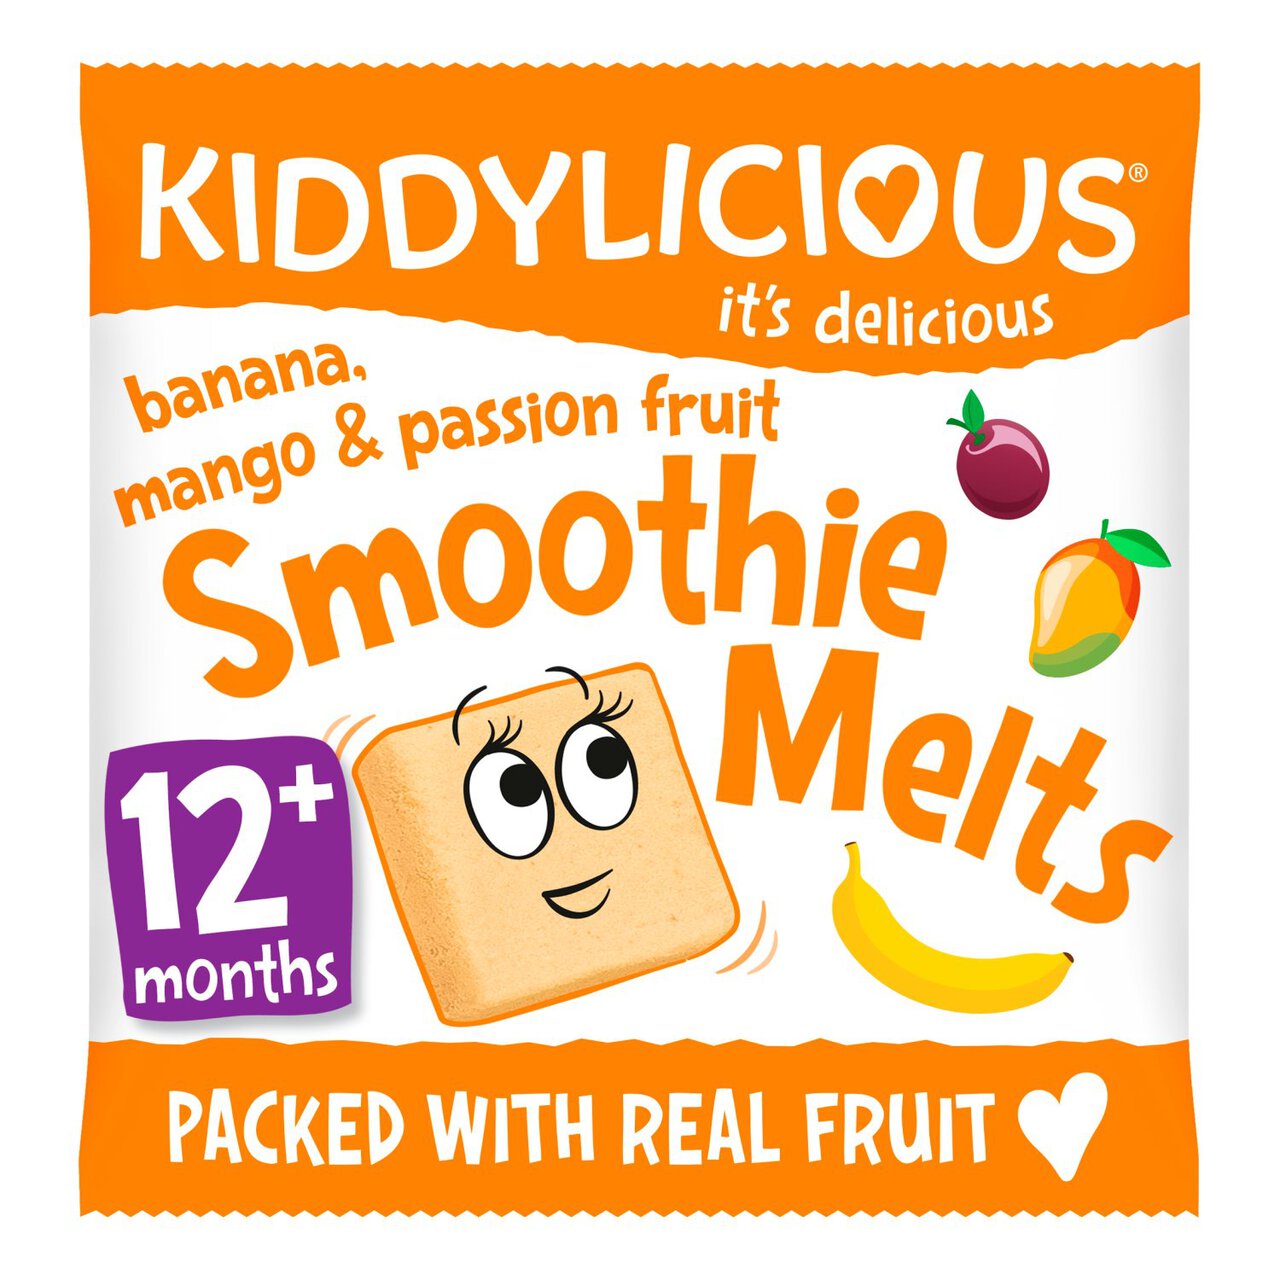 Kiddylicious Banana, Mango & Passionfruit Smoothie Melts, 12 mths+ 6g